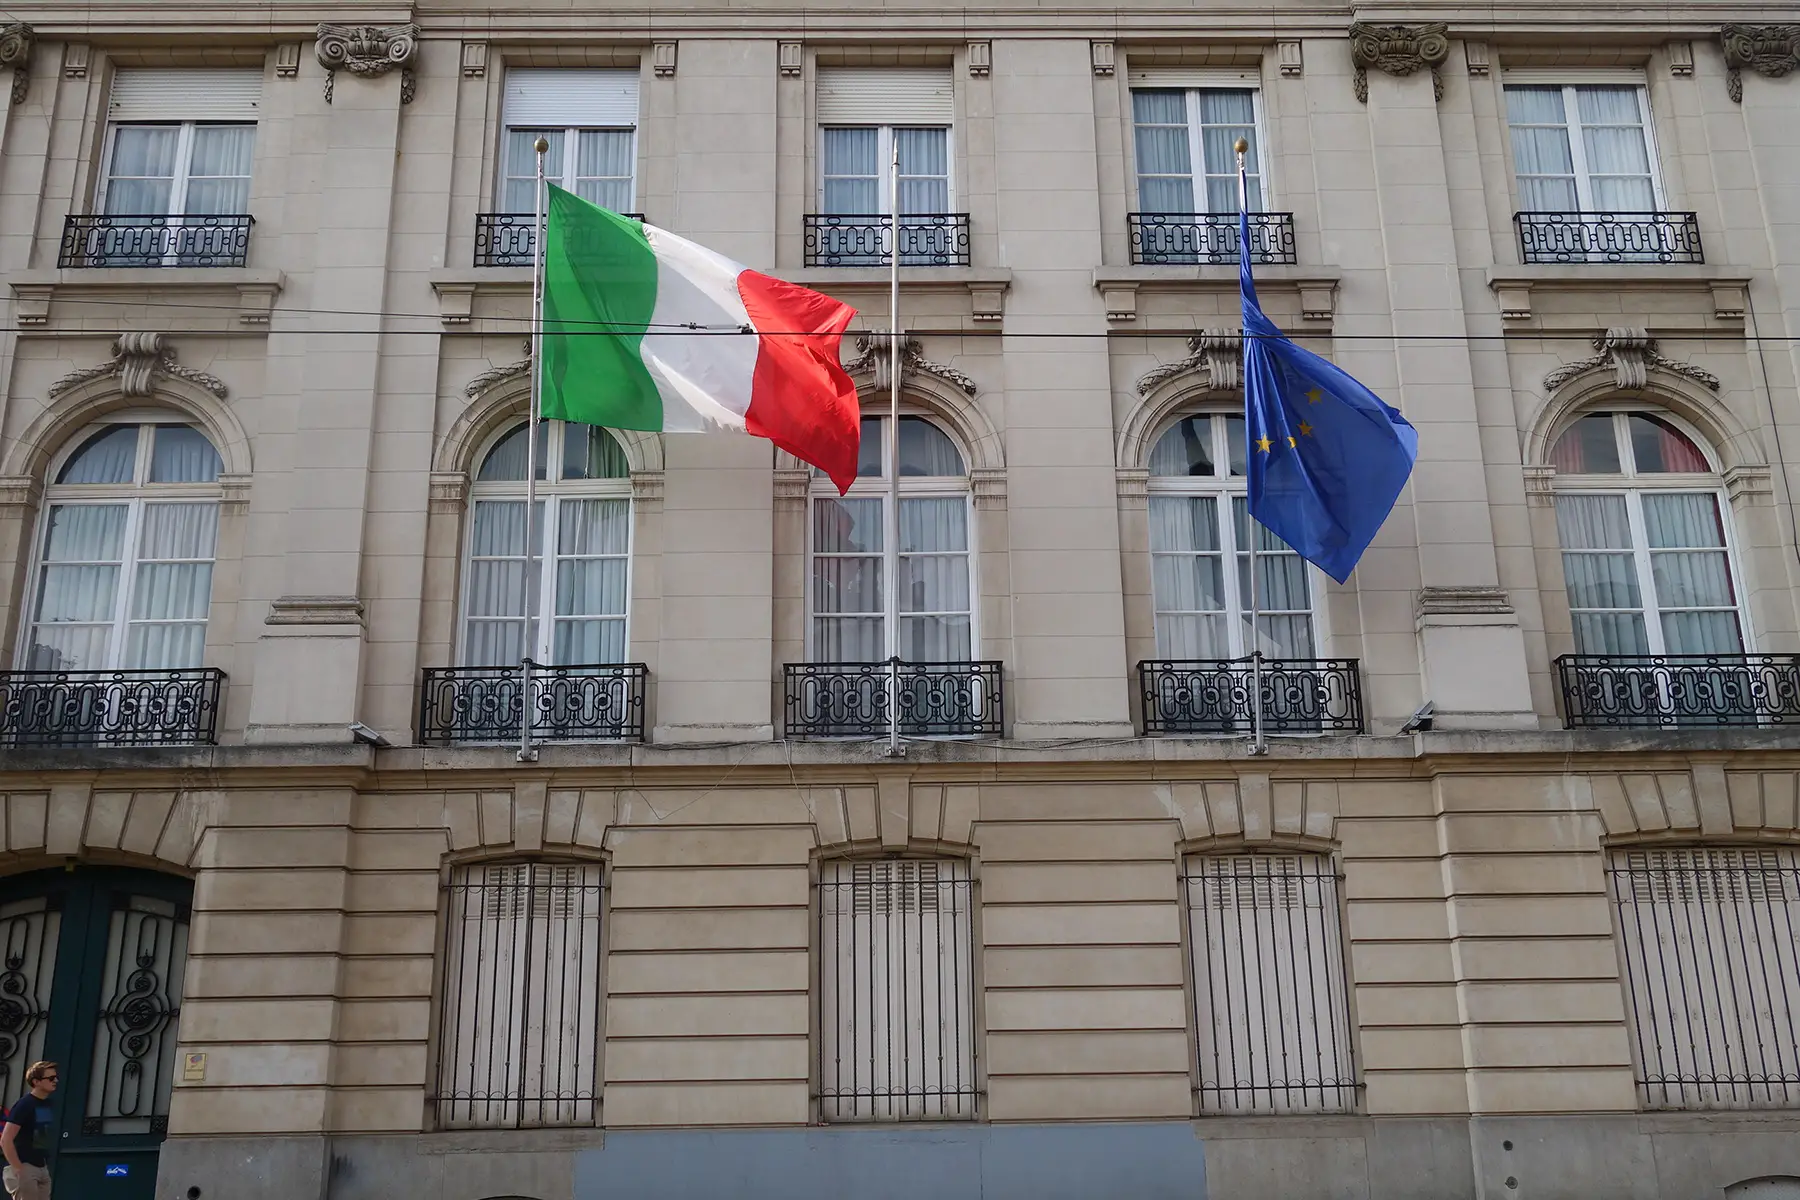 Italian Embassy in Brussels, Belgium